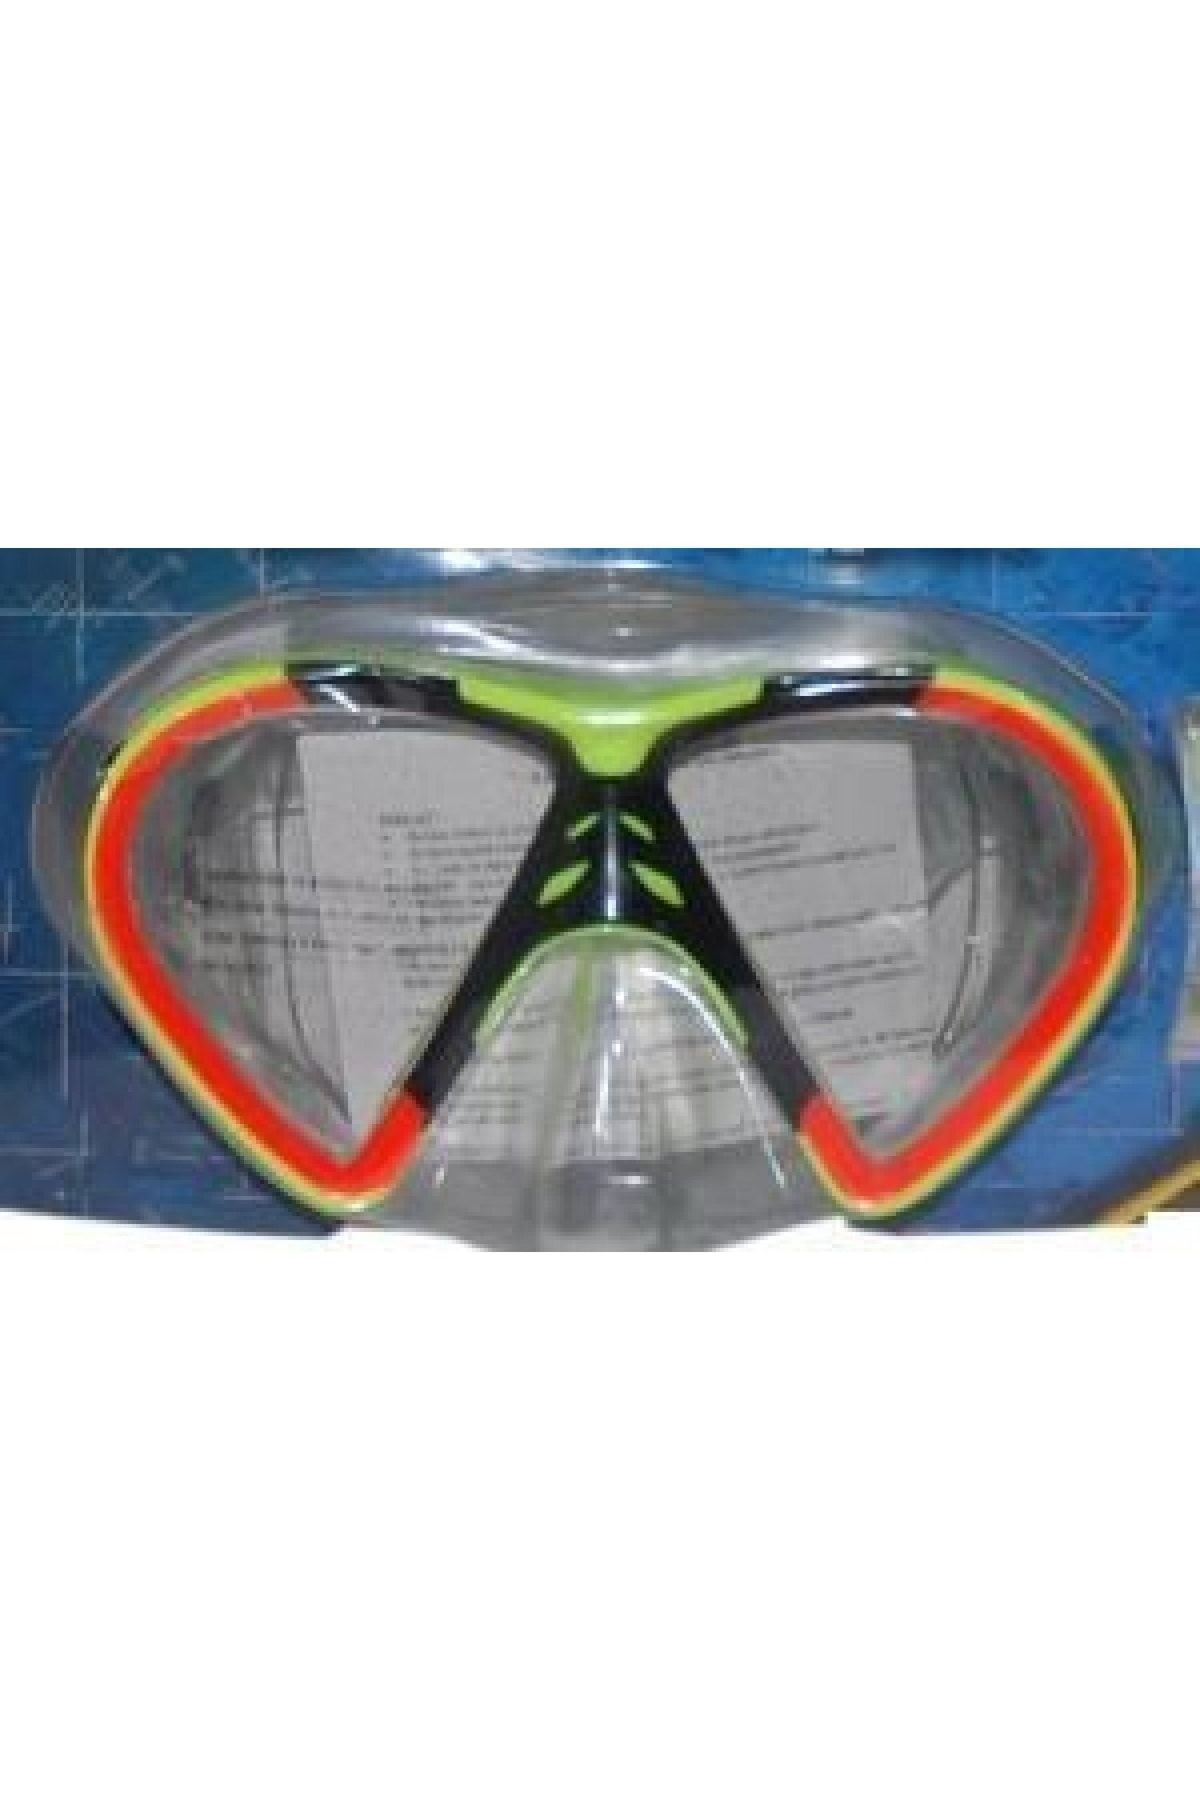 Genel Markalar Akdenizpos  Gr01 Yüzücü Maskesi Tek Maske  - 2356/csb (Yeni)